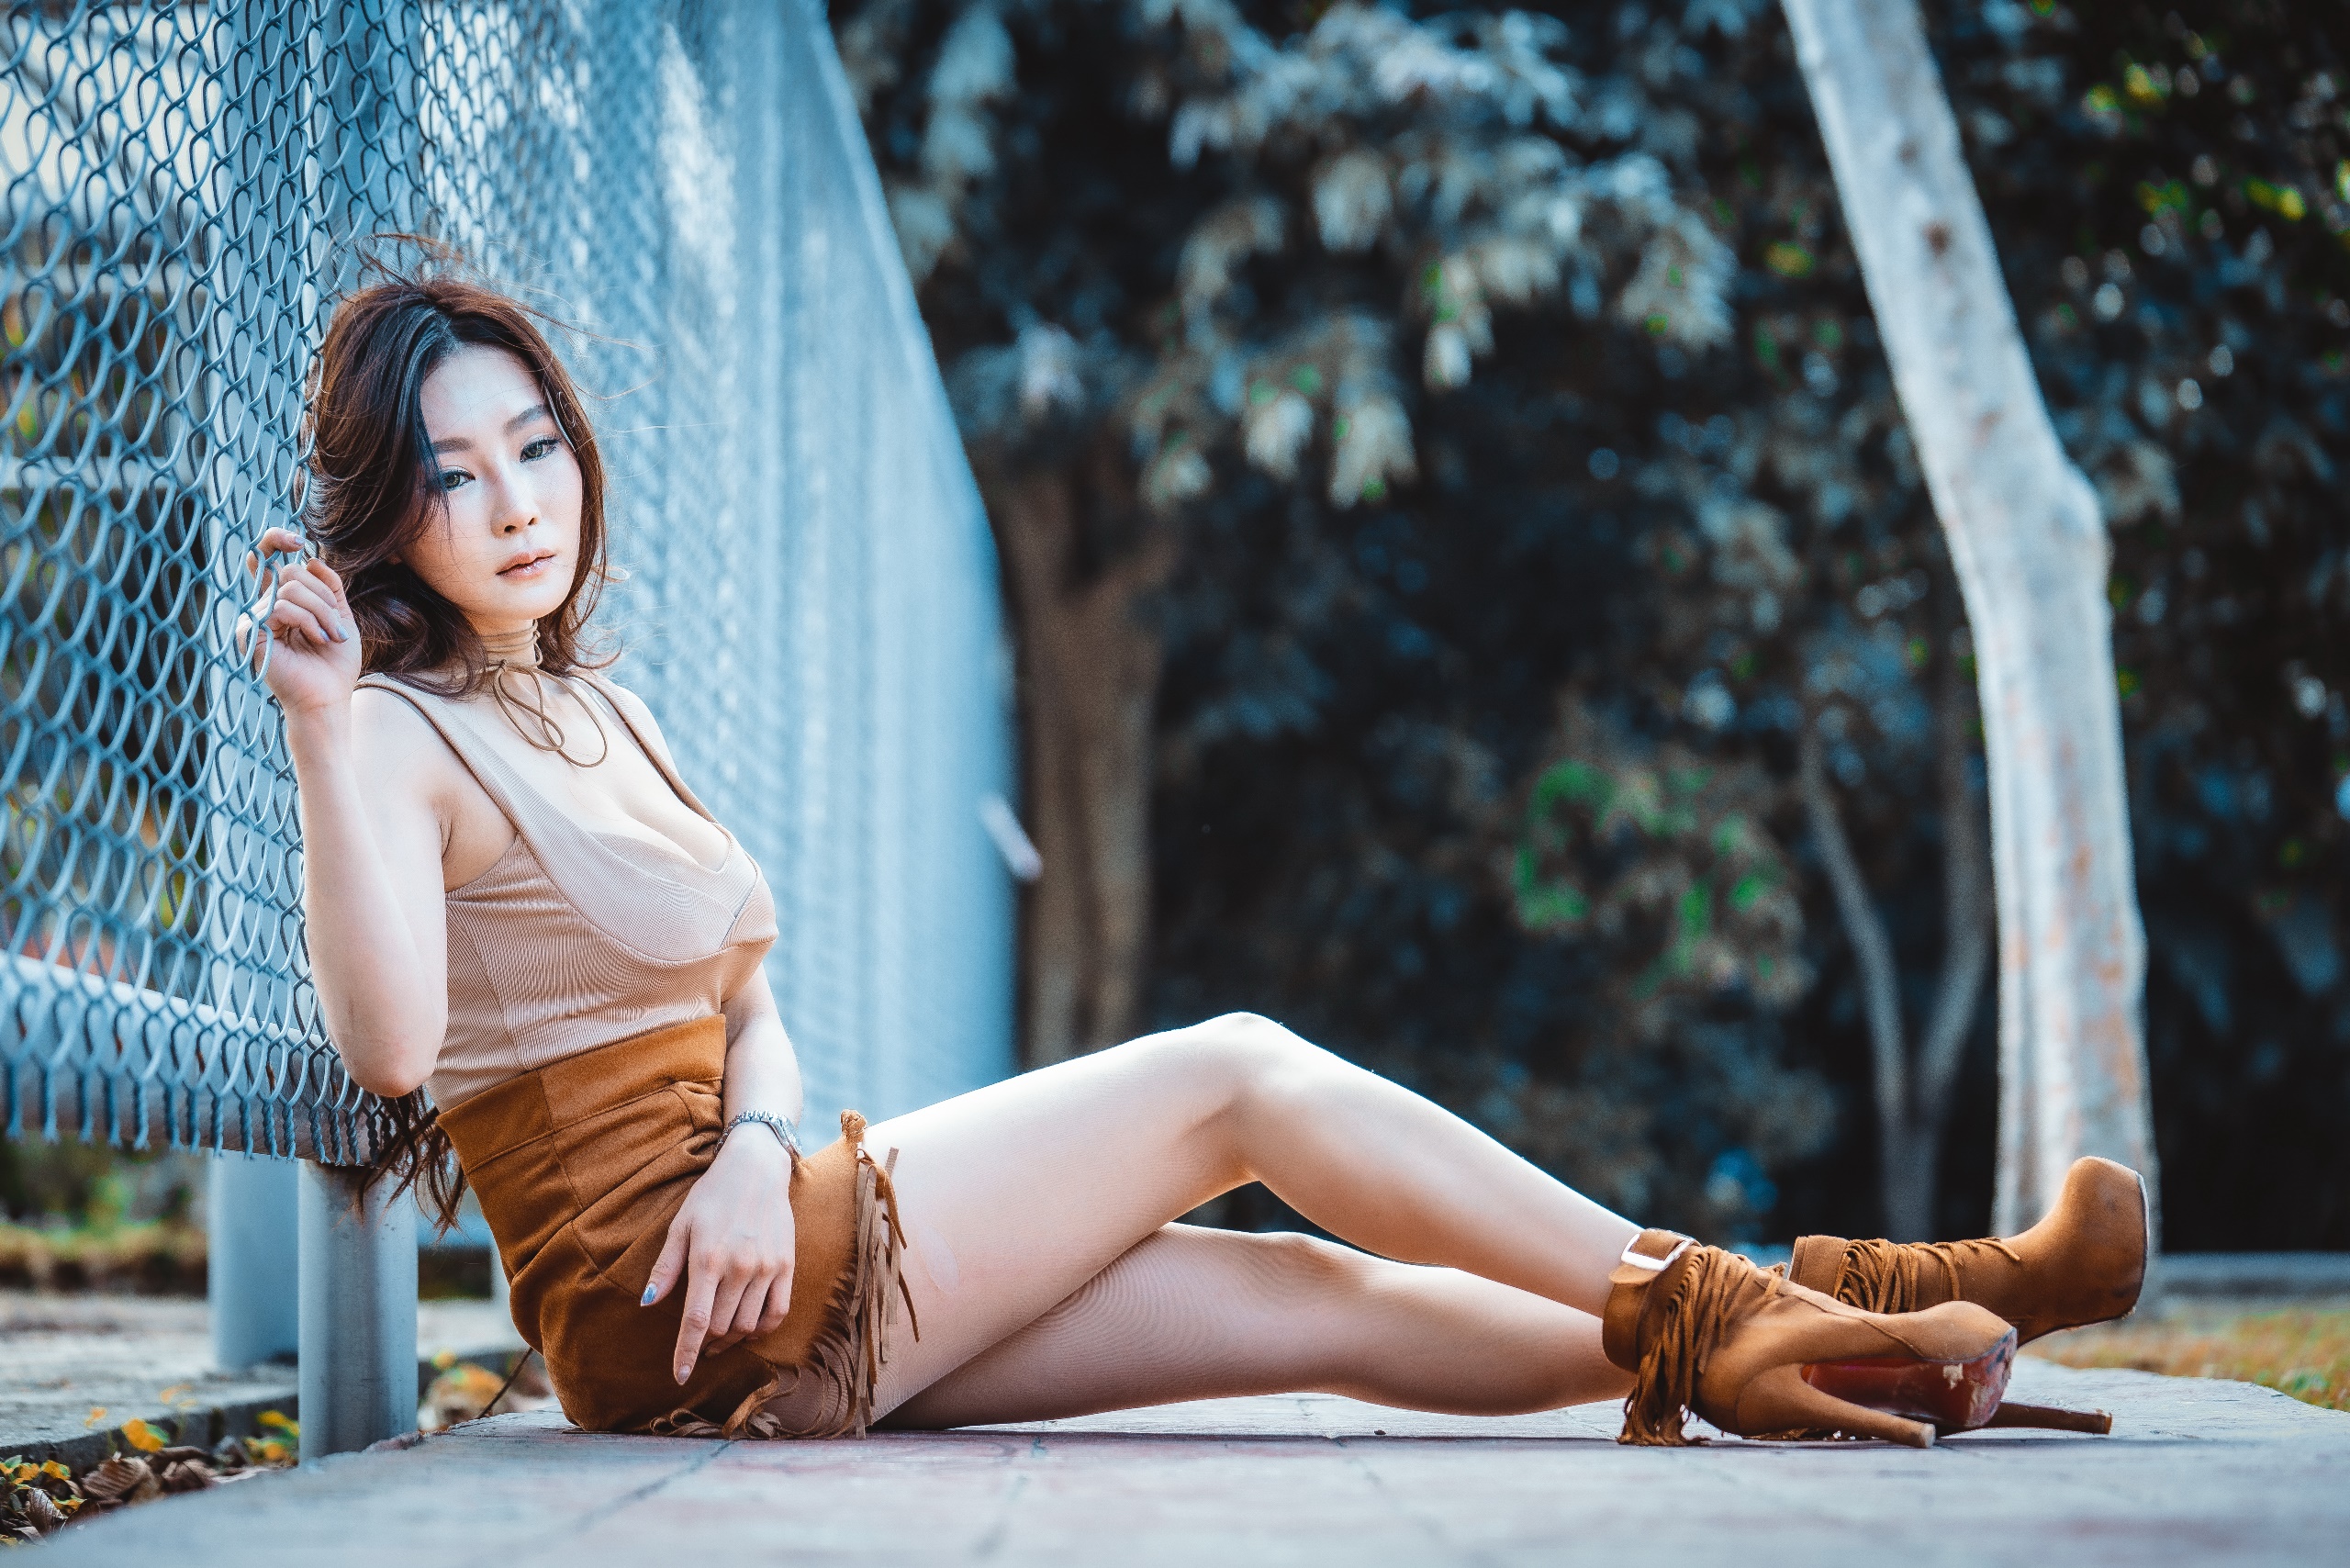 Asian Women Model Heels Legs Looking Away Urban Fence Women Outdoors Sitting 2560x1708